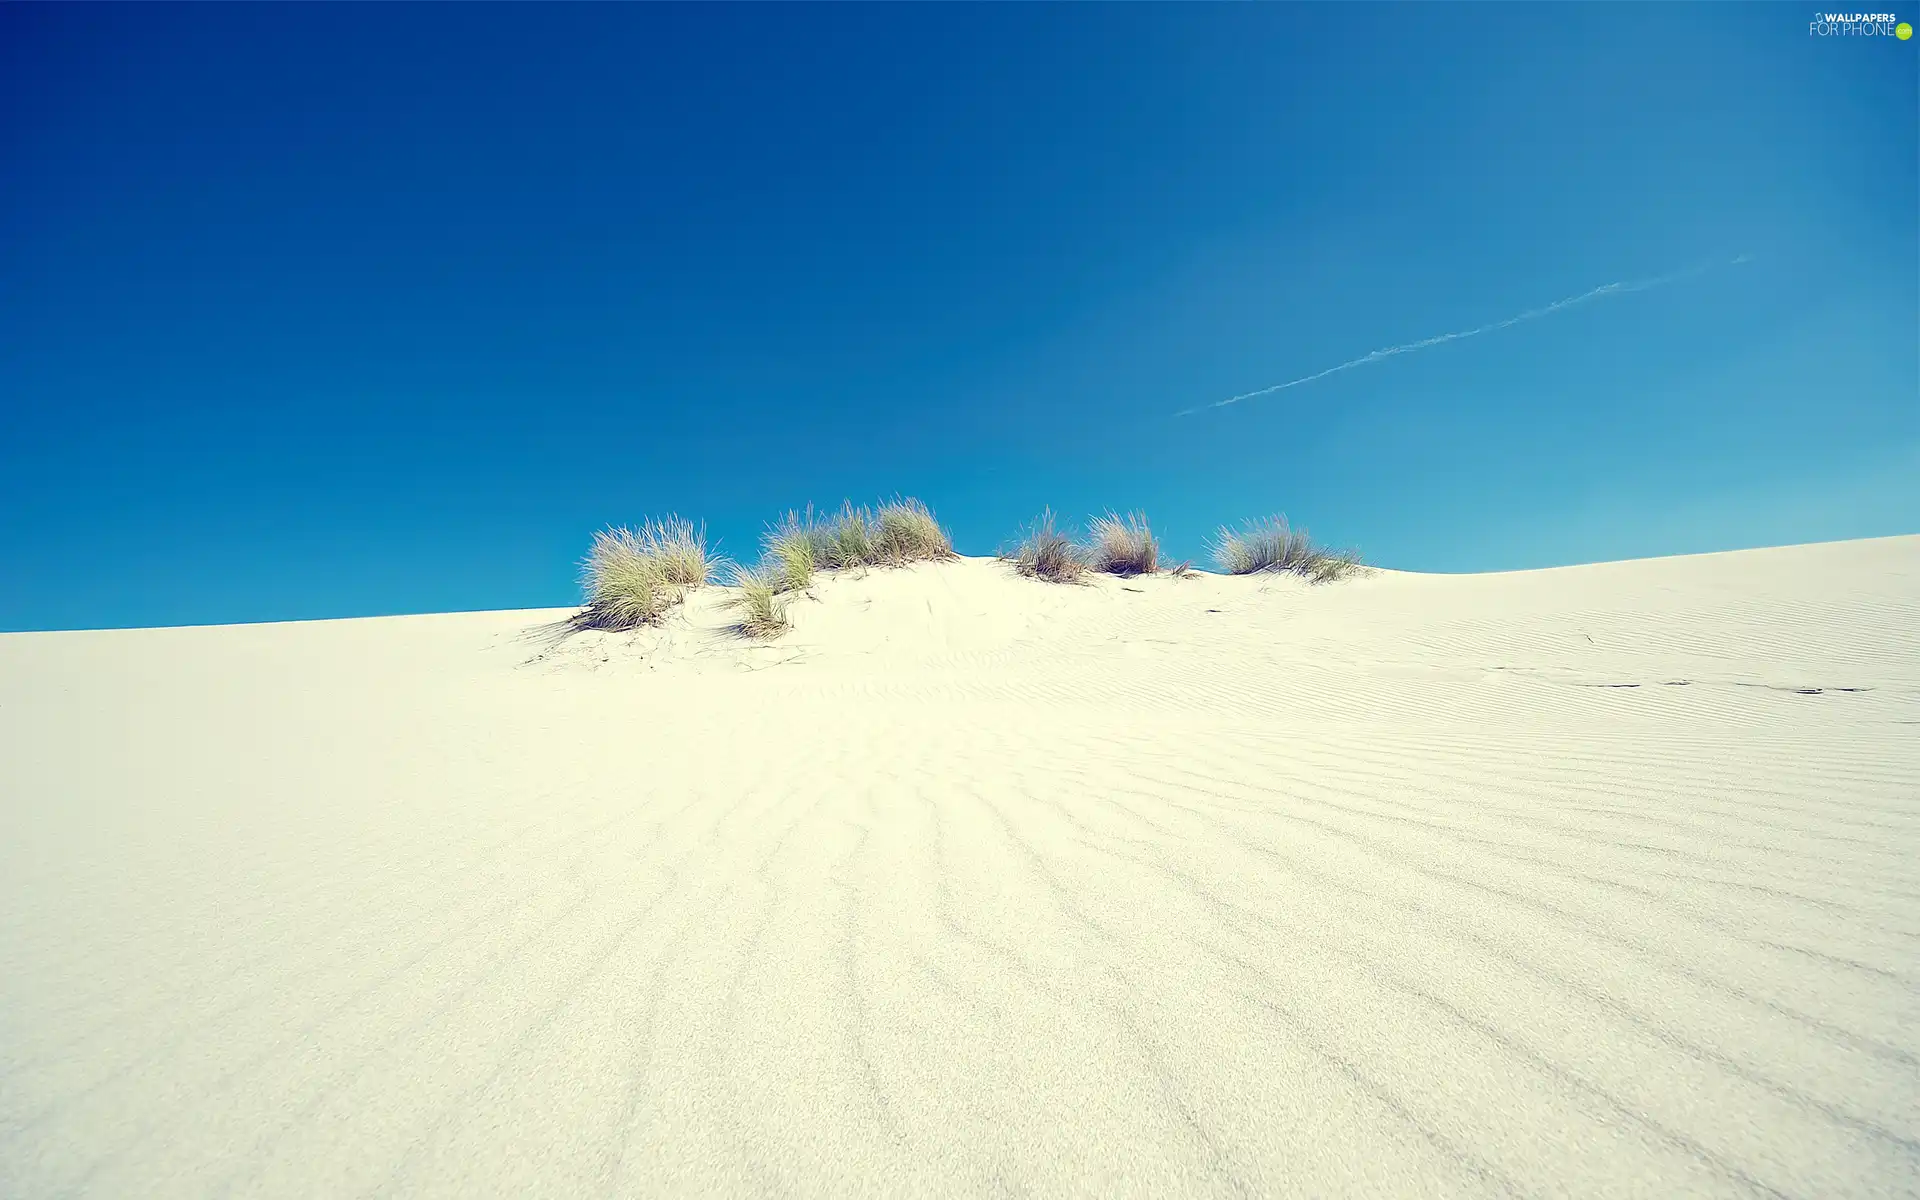 Desert, Bushes, embers, Sand